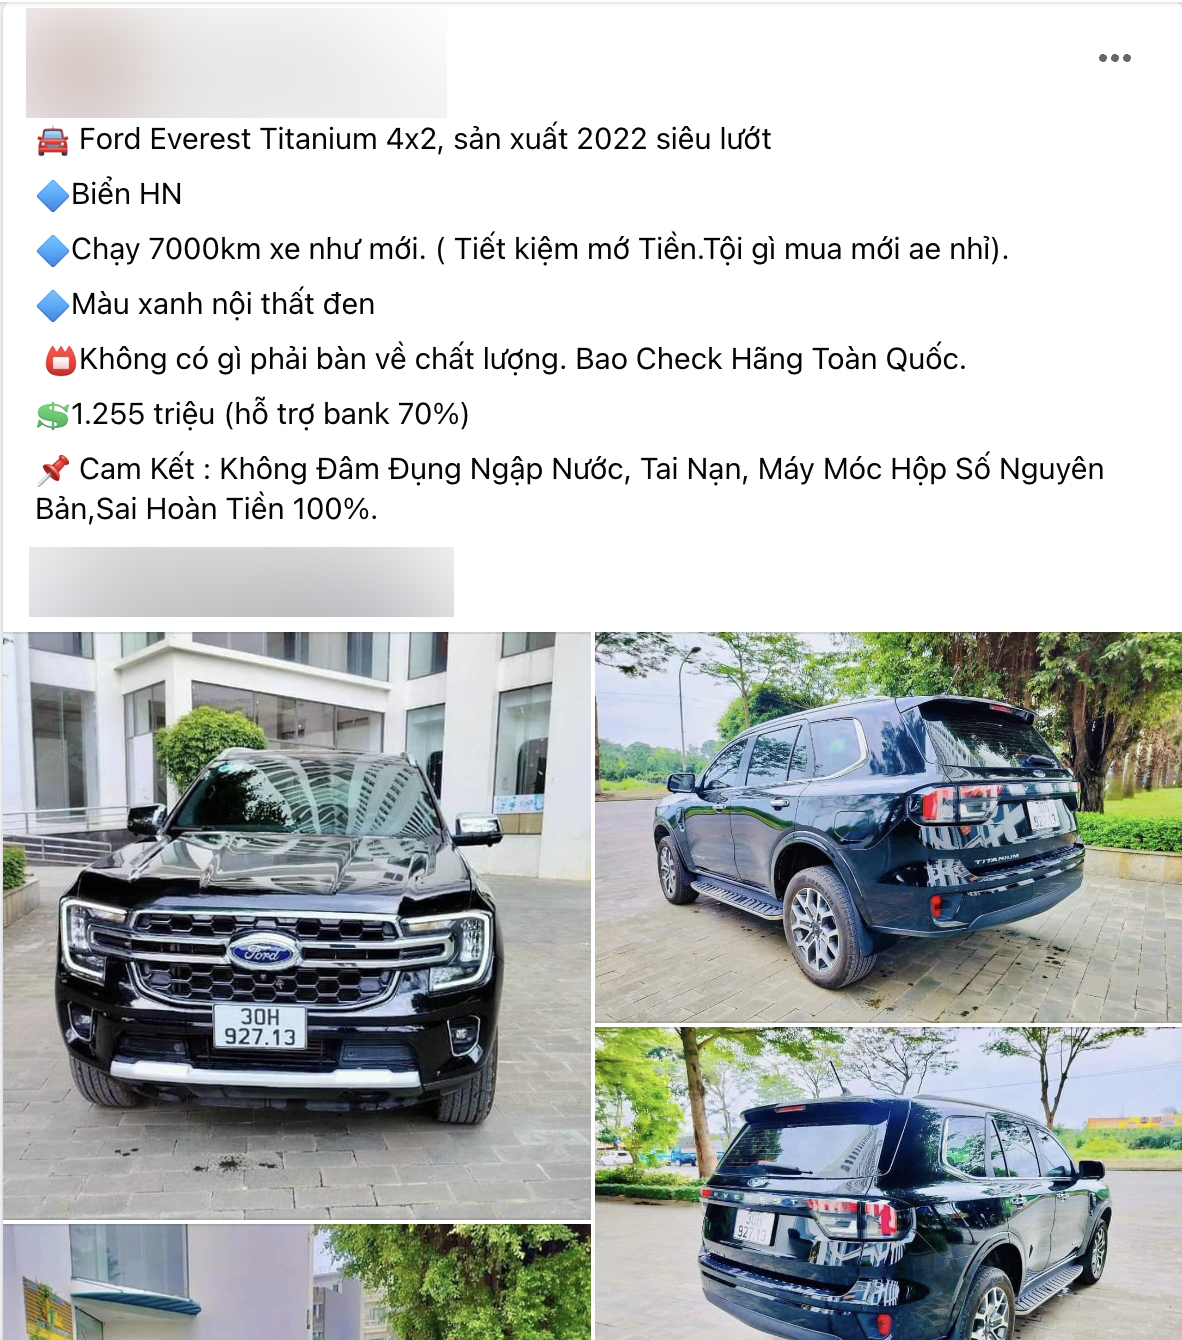 Rao Toyota Vios 2014 zin cả xe giá 230 triệu, người bán bị nghi ngờ lừa dối sau loạt ảnh xe tai nạn nát bét với biển số giống hệt - Ảnh 5.